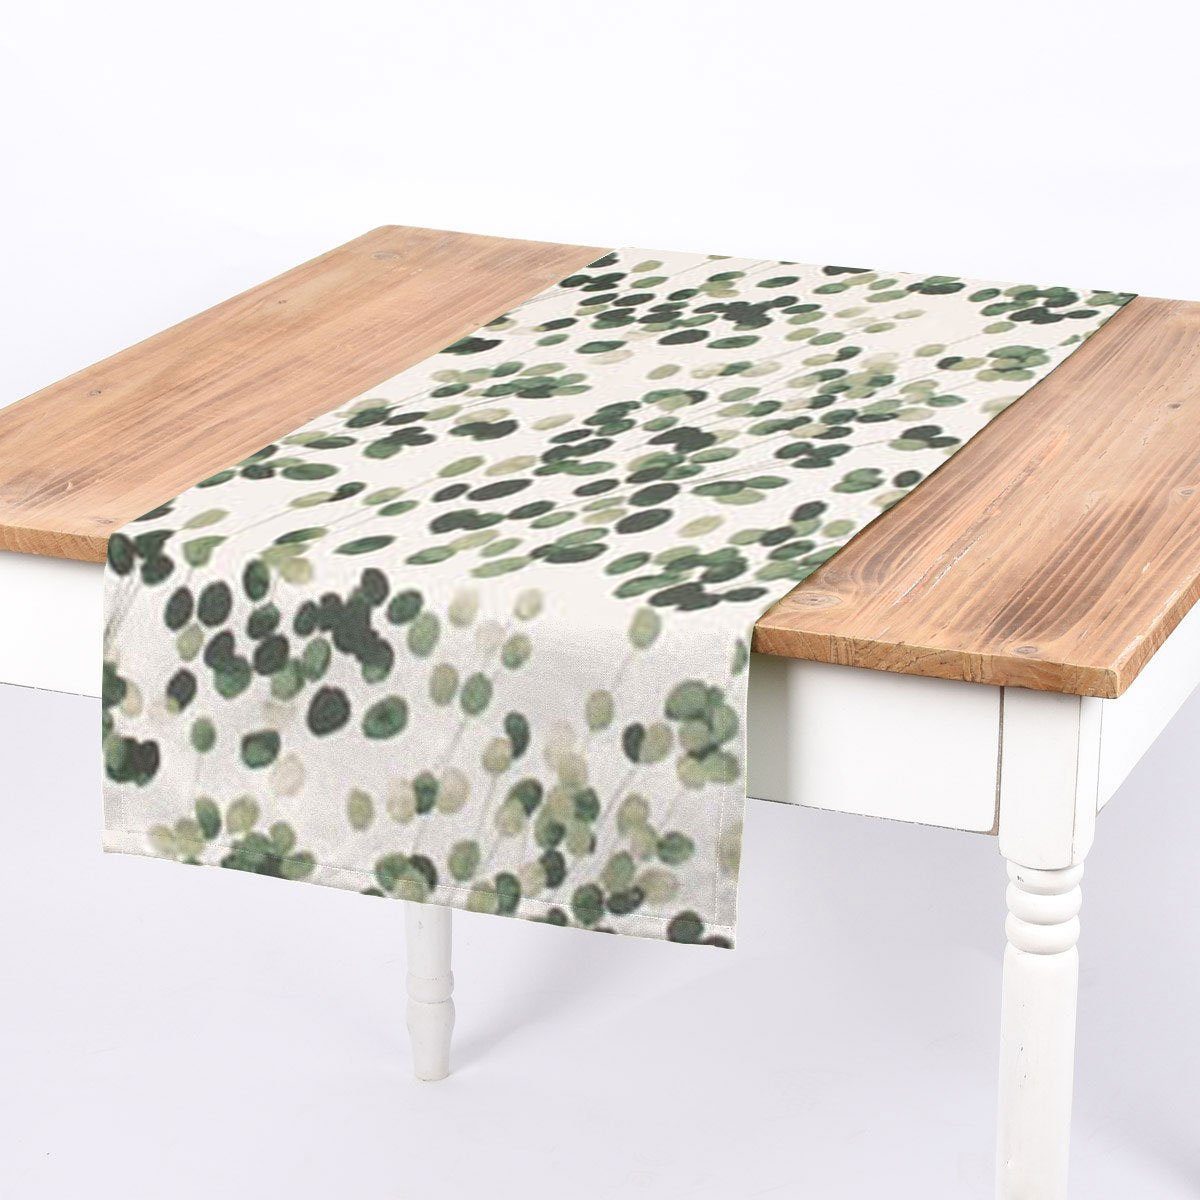 SCHÖNER LEBEN. Tischläufer SCHÖNER LEBEN. Tischläufer Digitaldruck Blätter wollweiß grün, handmade